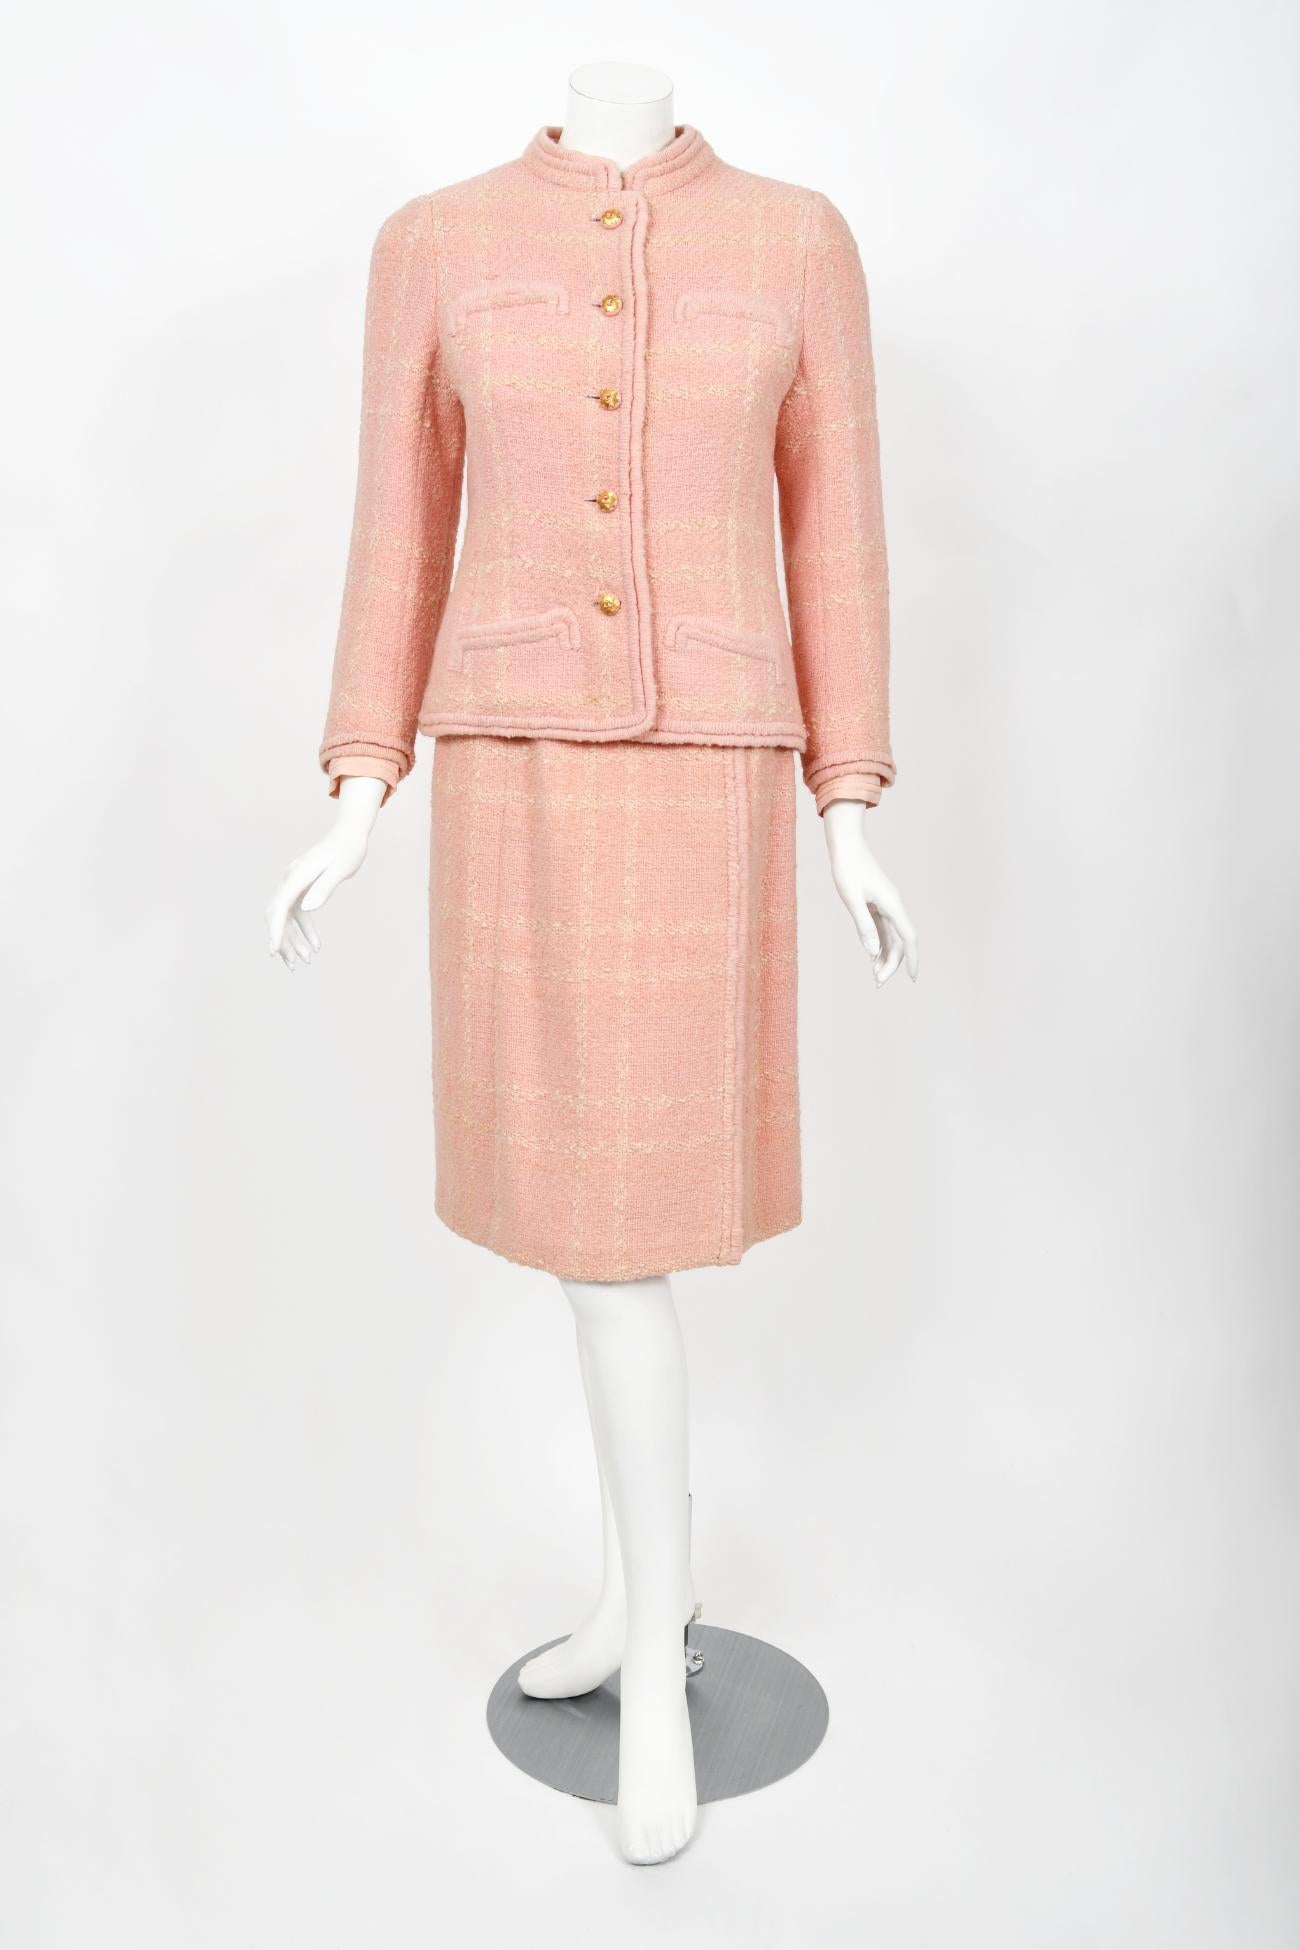 Chanel Haute Couture documenté veste chemisier jupe chemisier en laine rose vintage 1973 en vente 6